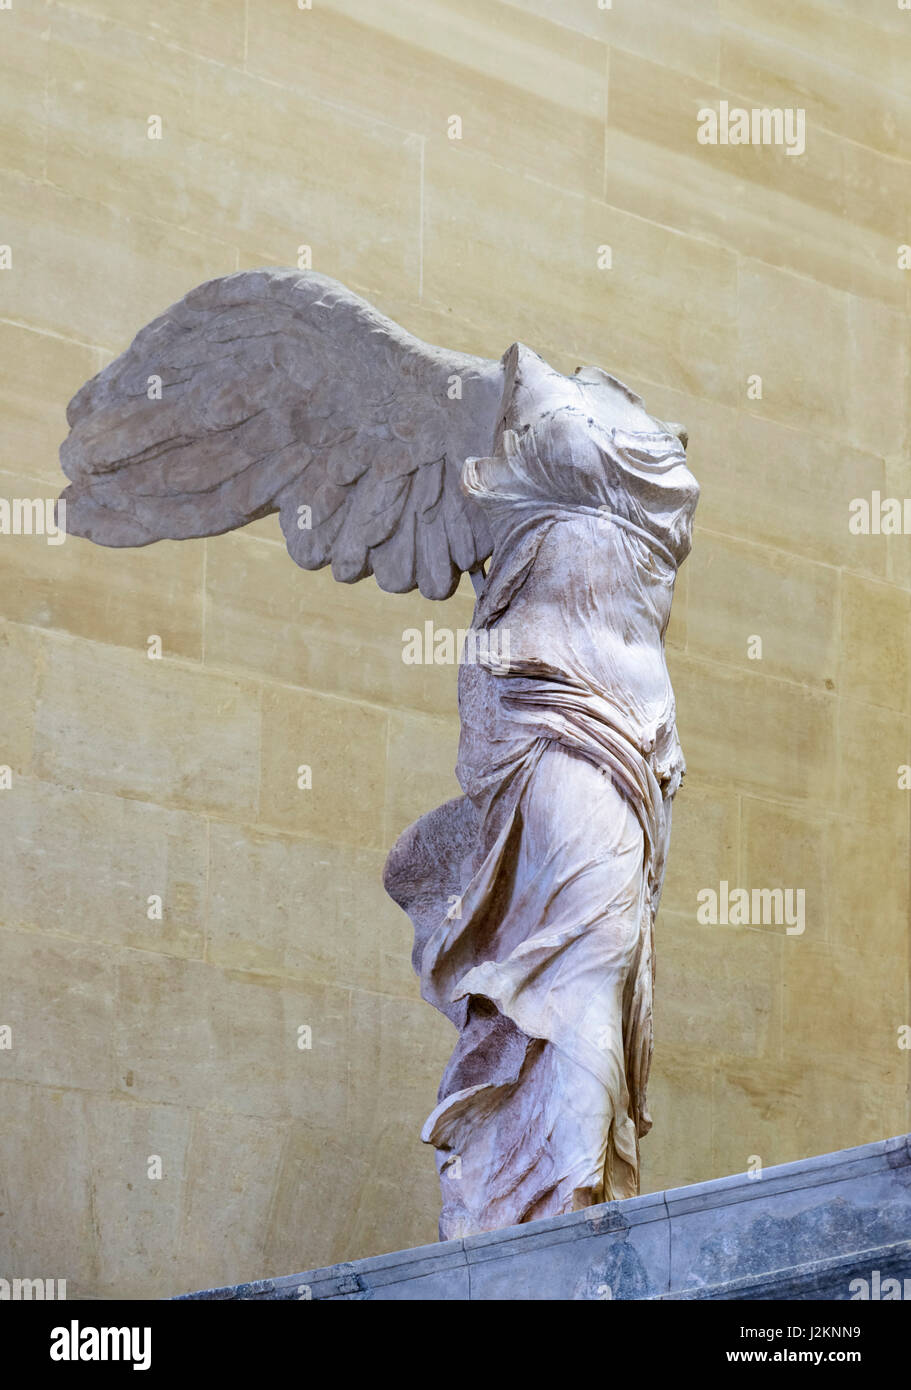 La Victoire ailée de Samothrace ou The Winged Nike, musée du Louvre, Paris, France. La sculpture de la déesse grecque, Nike, date du 2ème siècle avant J.-C. Banque D'Images